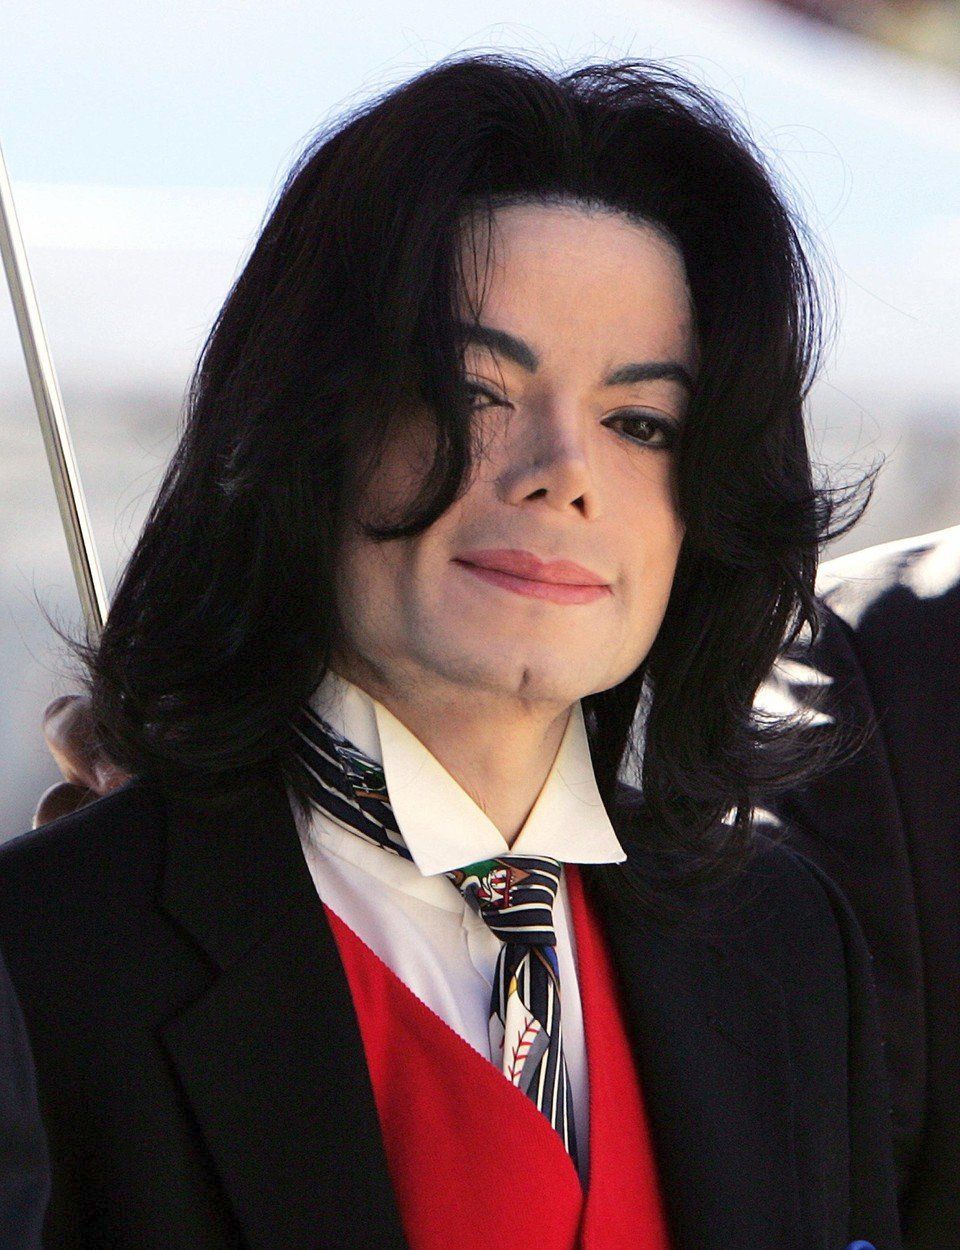 Zesnulý zpěvák Michael Jackson (†50) trpěl takovými traumaty ze svého vzhledu, že podstoupil desítky plastických operací po celém těle